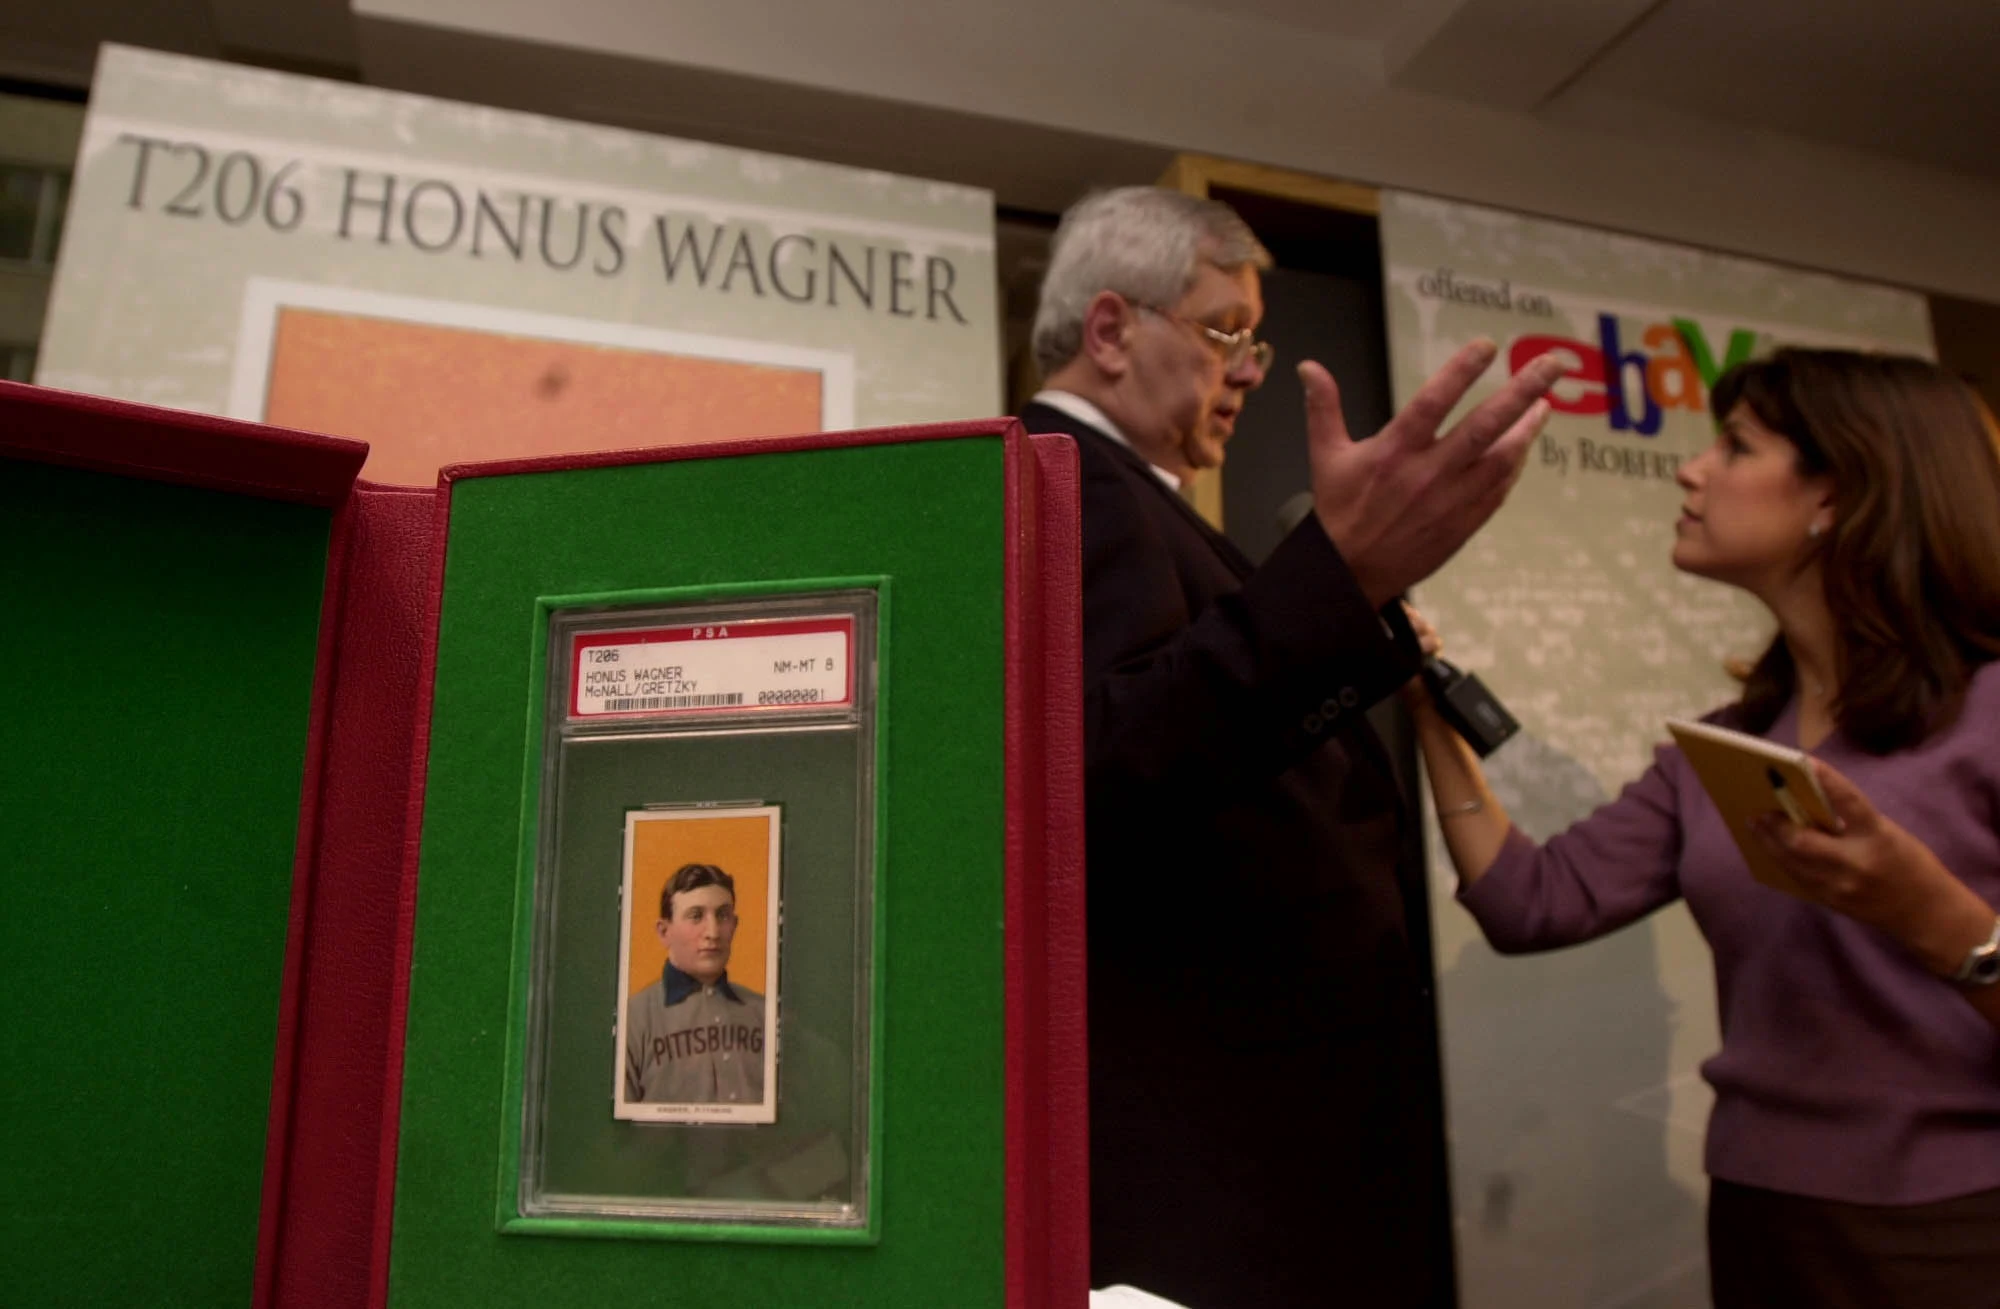 Honus Wagner T206 baseball card, a Holy Grail, sells for $7.25 million